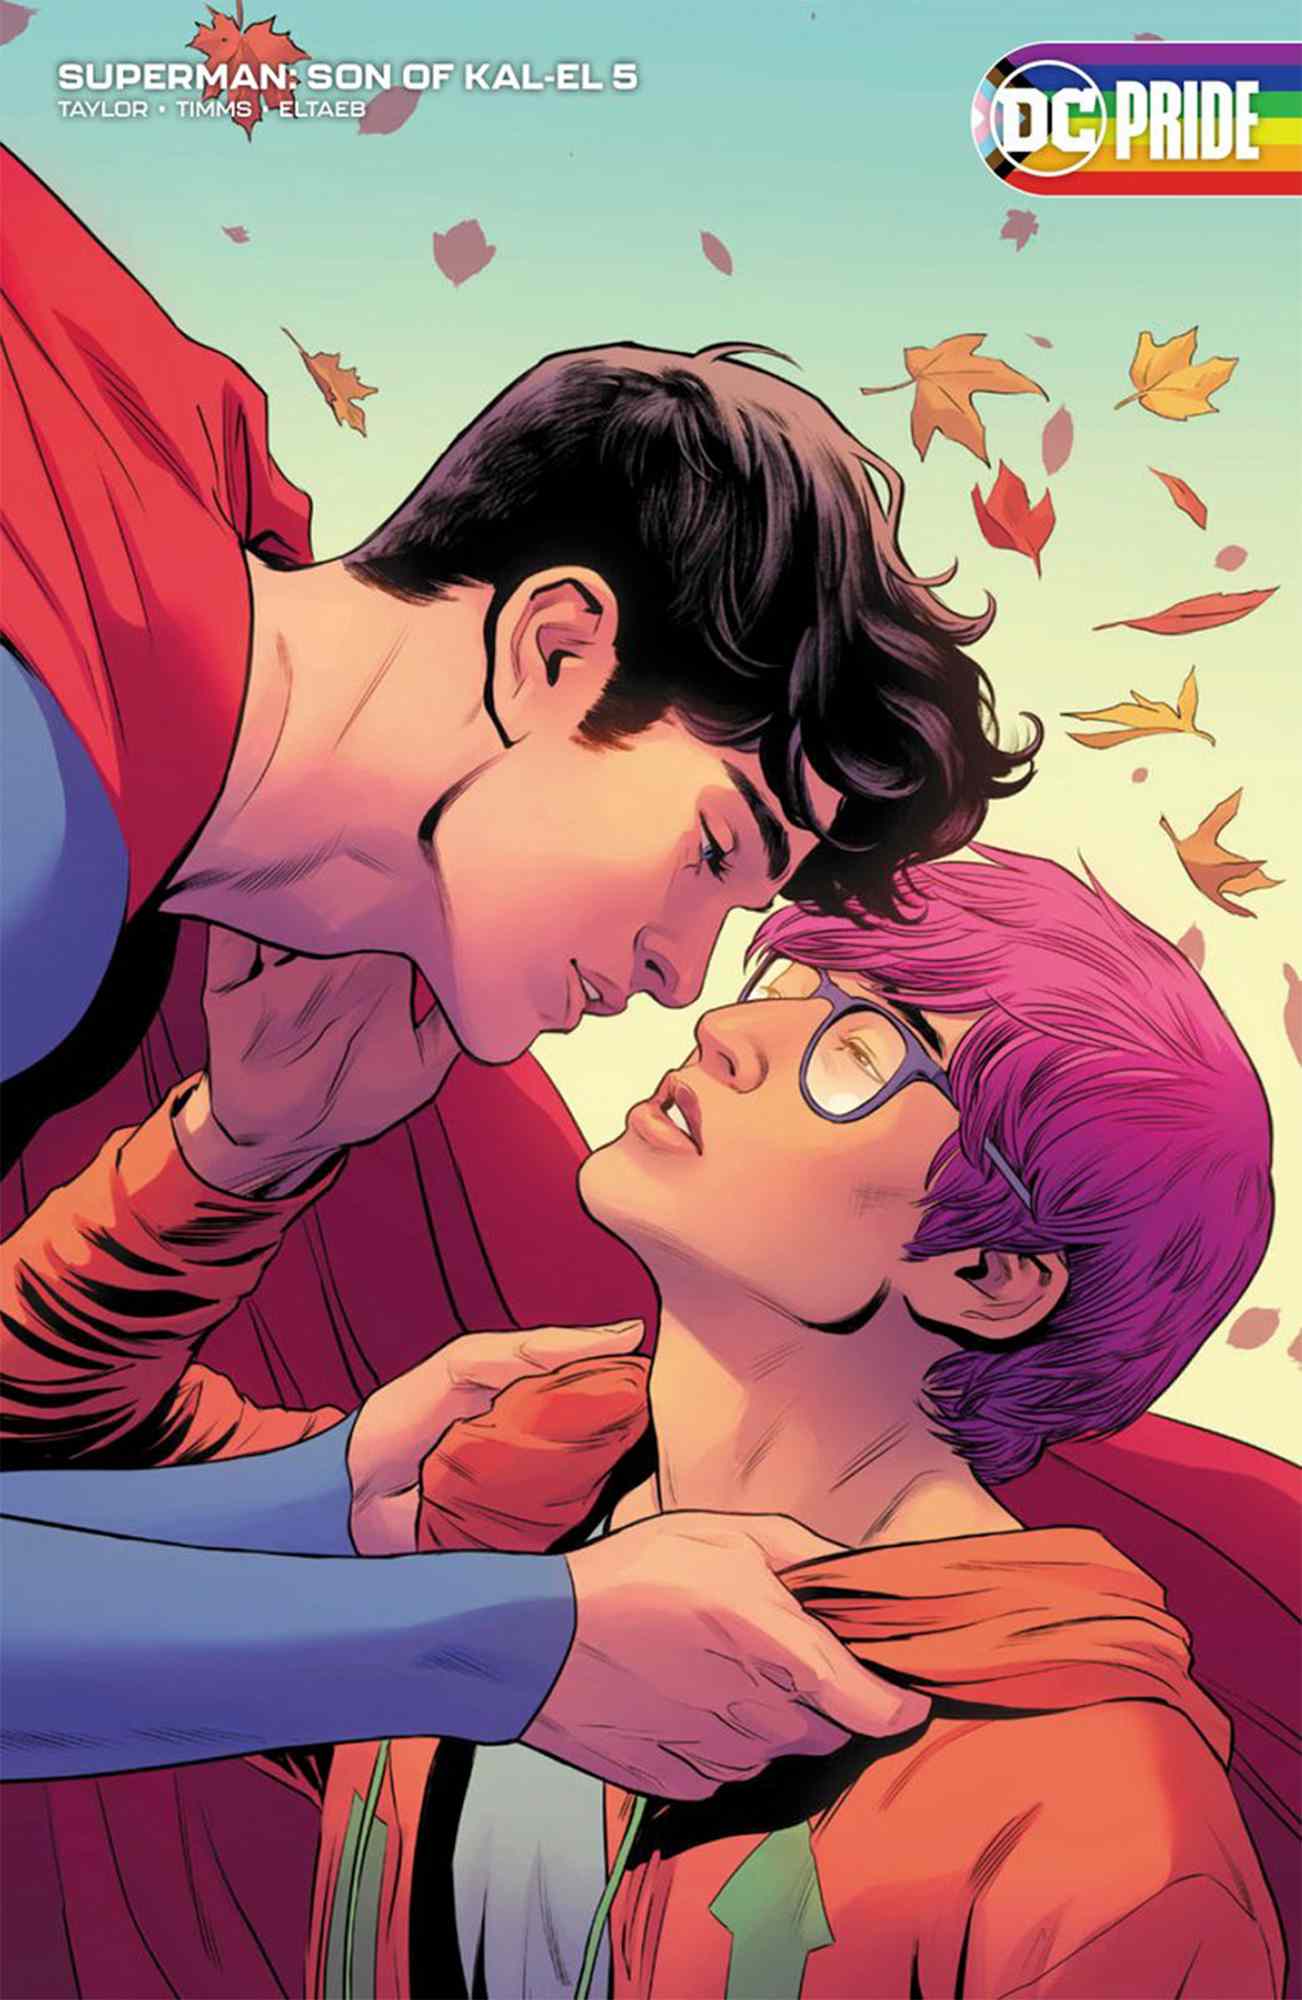 Superman se révèle bisexuel dans une nouvelle bande dessinée : "Tout le monde mérite de se voir" dans Heroes